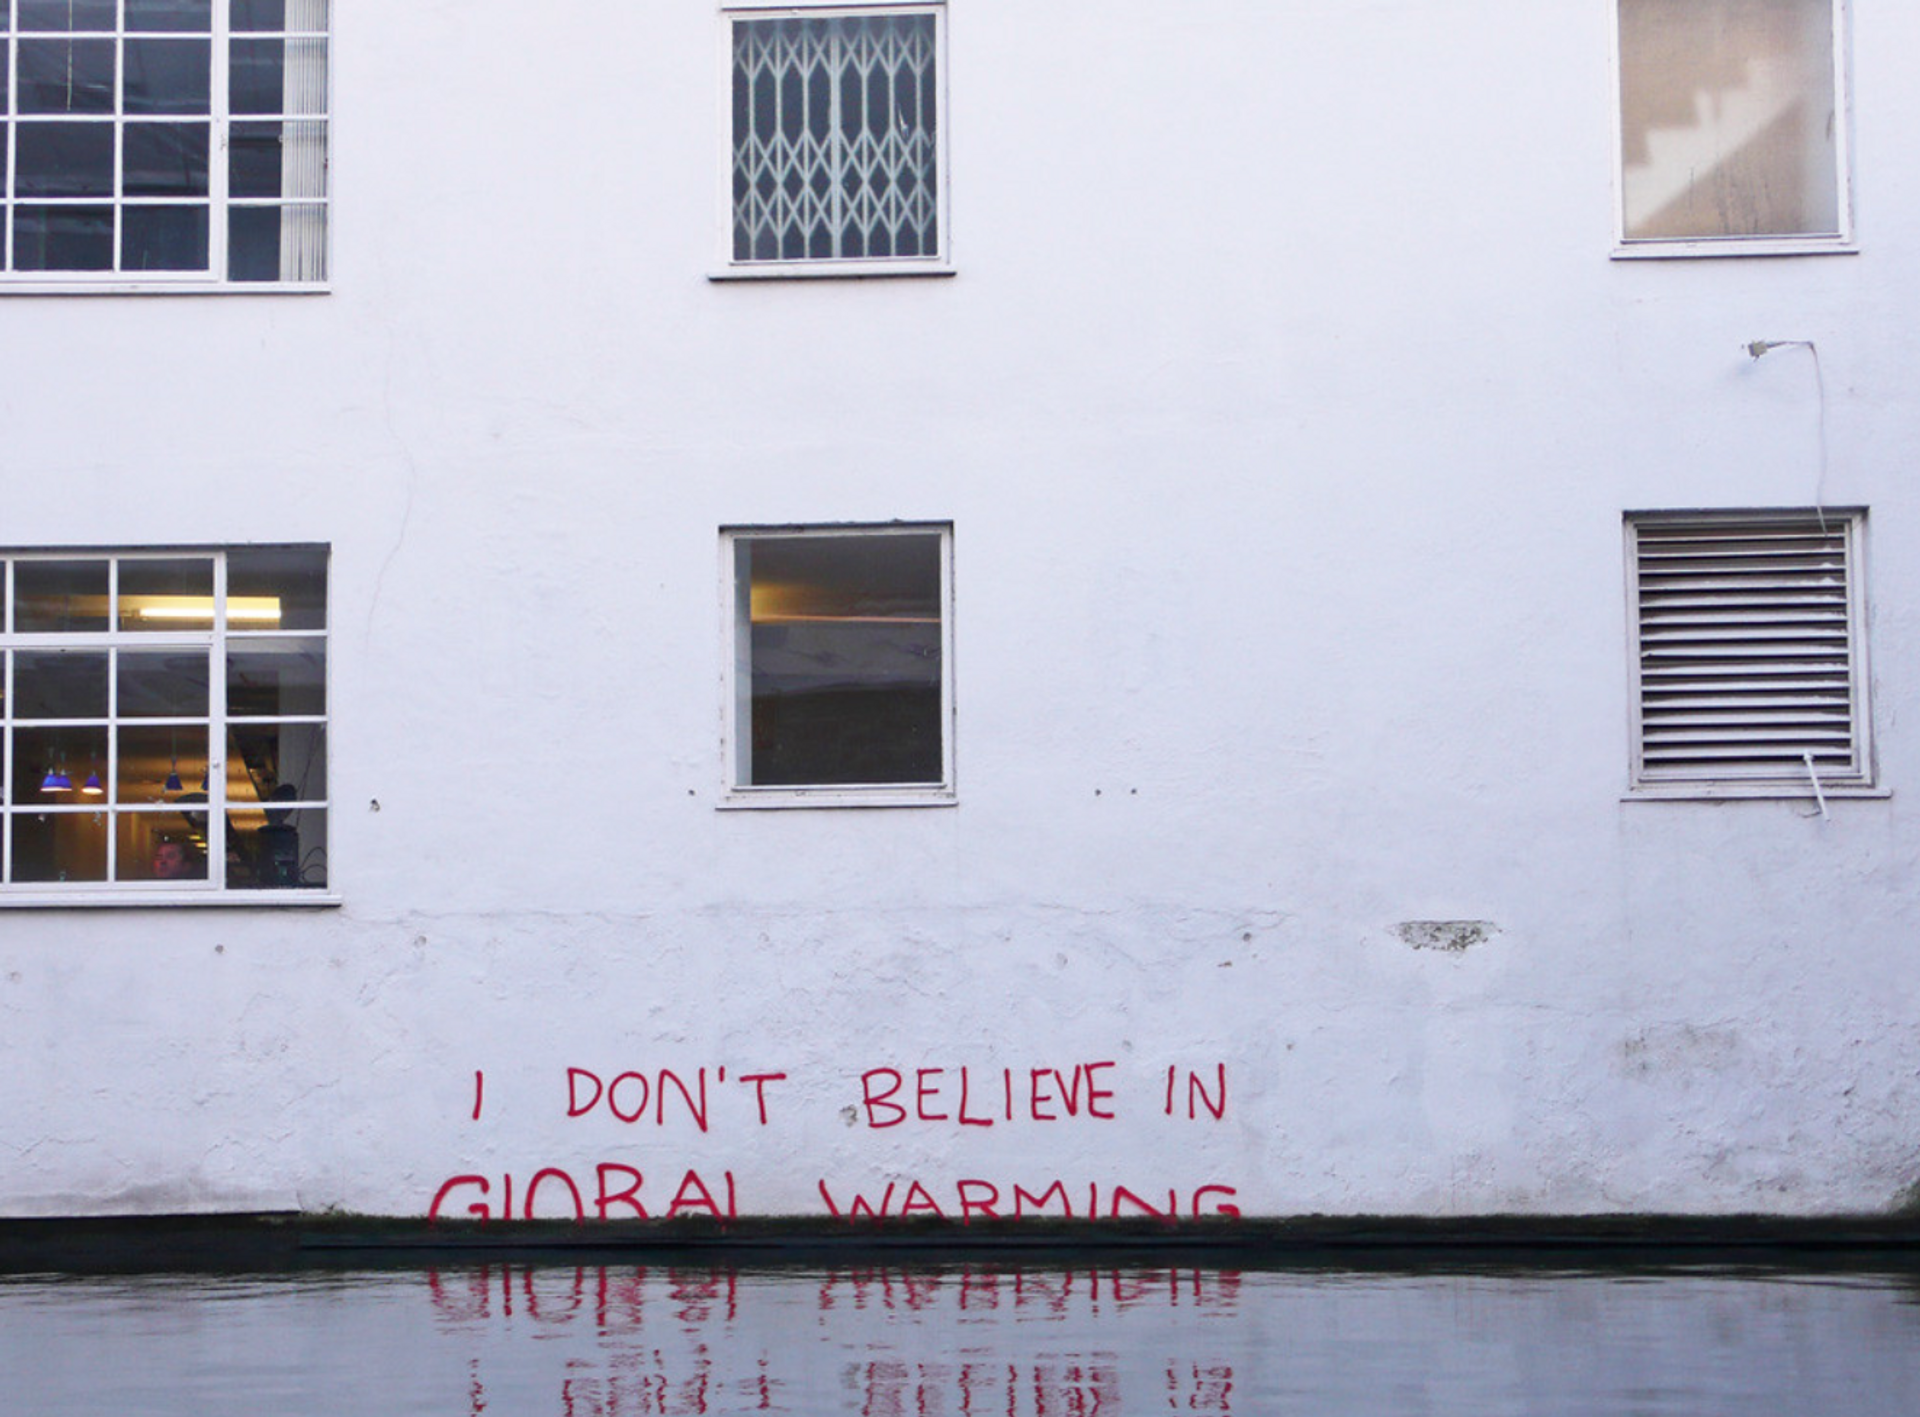 I Don't Believe in Global Warming by Banksy, Regent's Canal - MyArtBroker